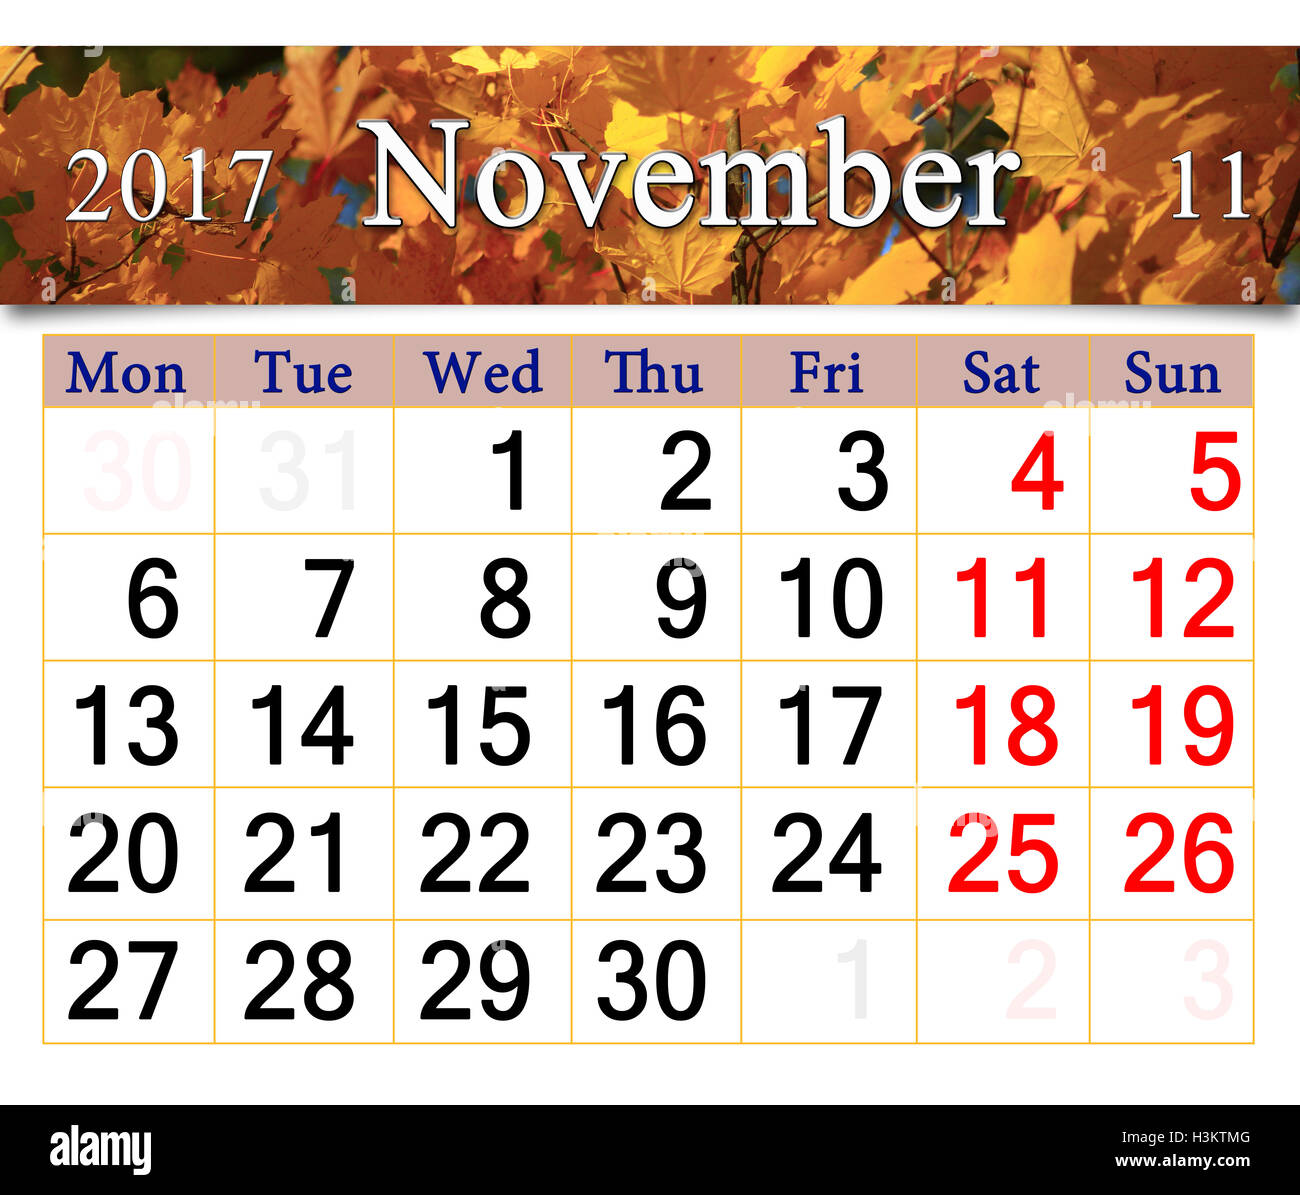 Calendrier de novembre 2017 avec le ruban de feuilles d'érable jaune Banque D'Images